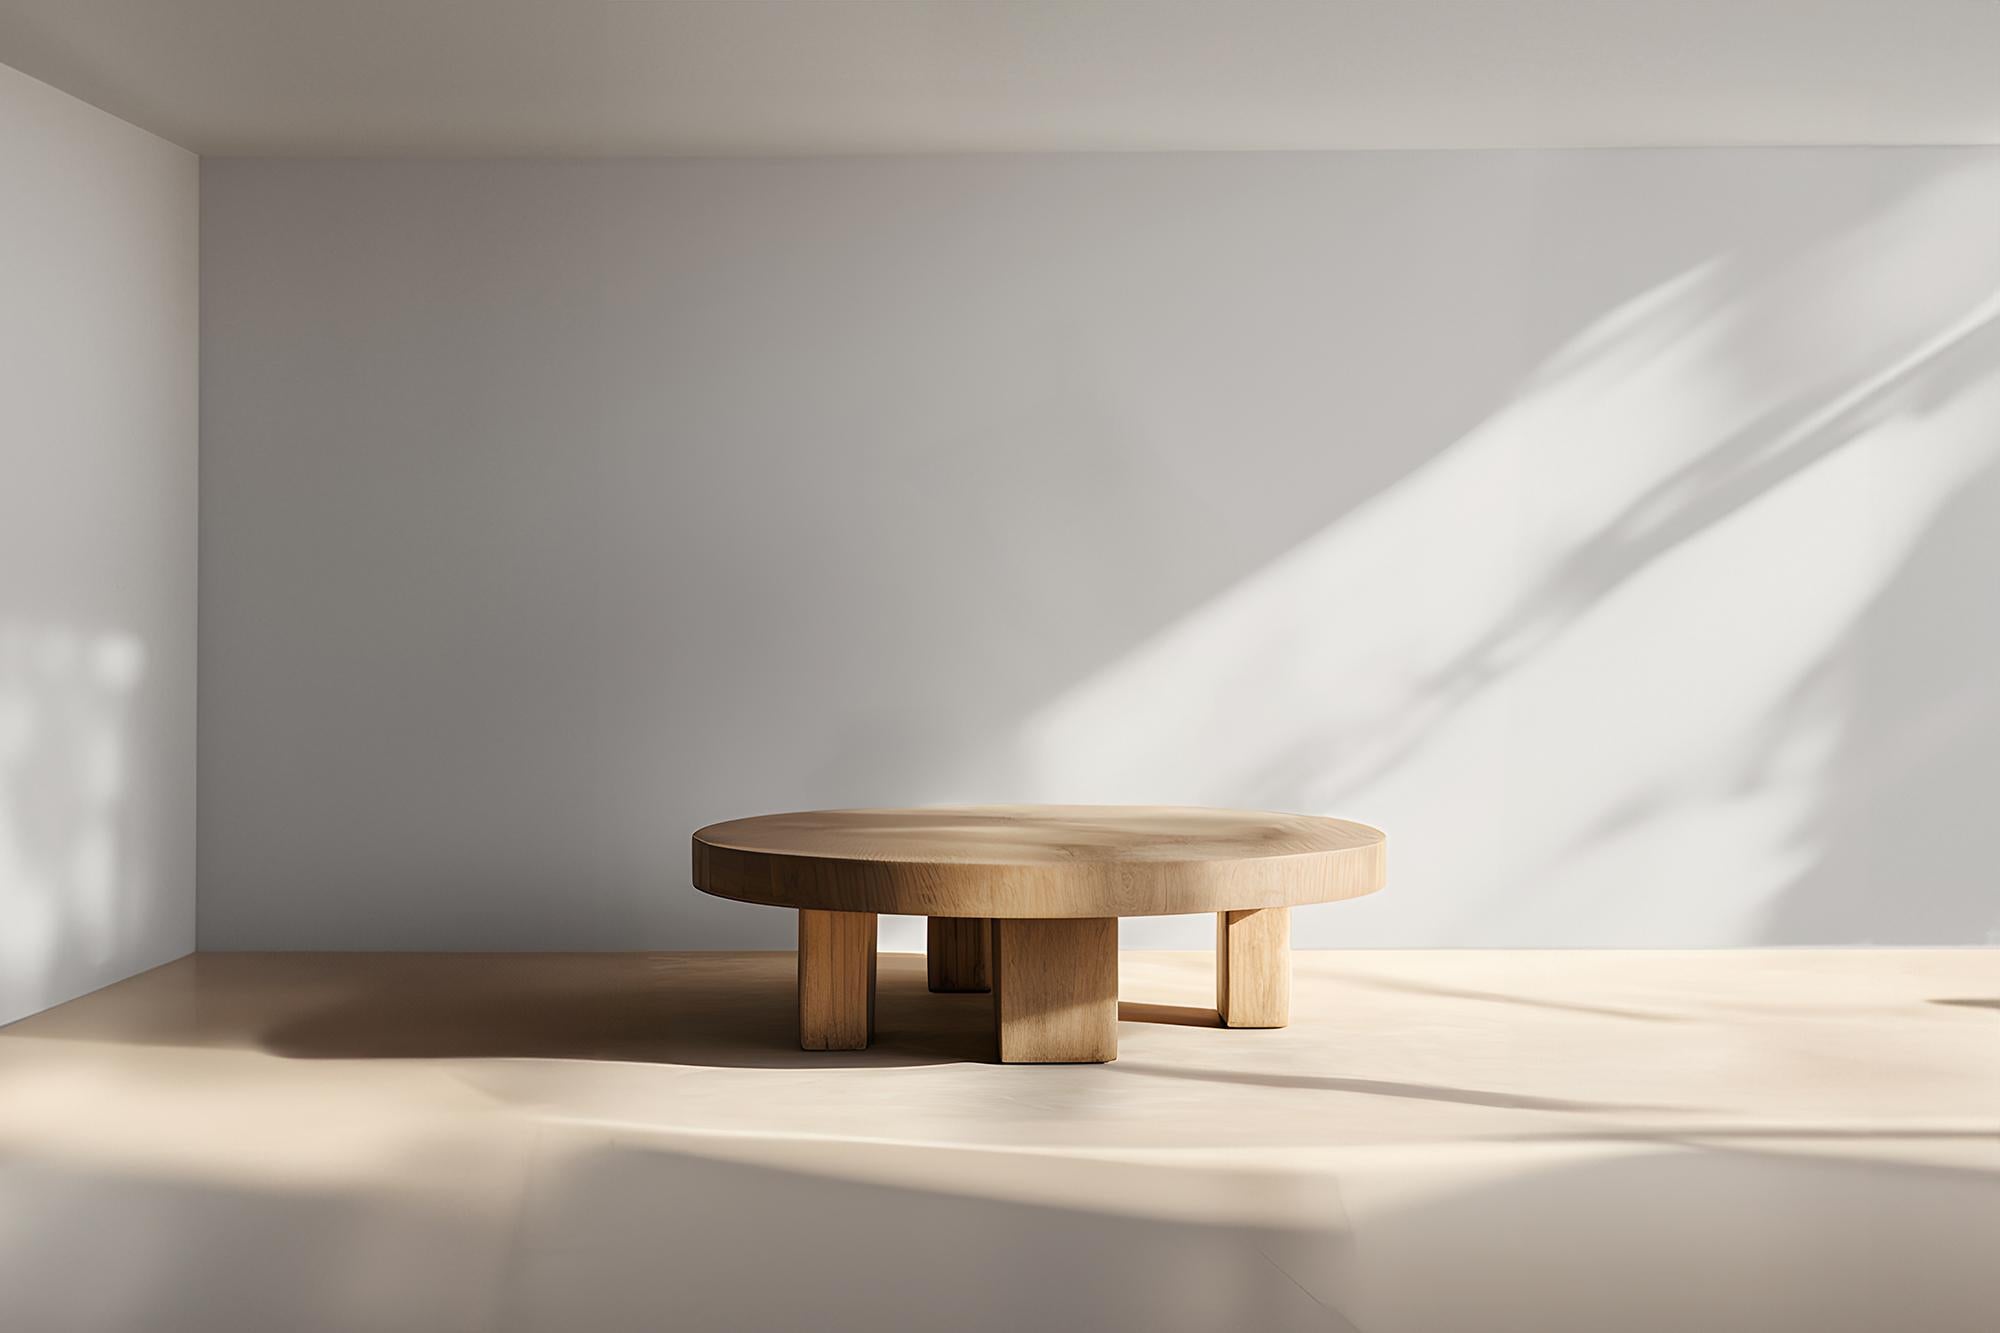 Fundamenta ronde en bois massif 50 Elegance abstraite, Design durable par NONO


Table basse sculpturale en bois massif avec une finition naturelle à base d'eau ou teintée en noir. En raison de la nature du processus de production, chaque pièce peut